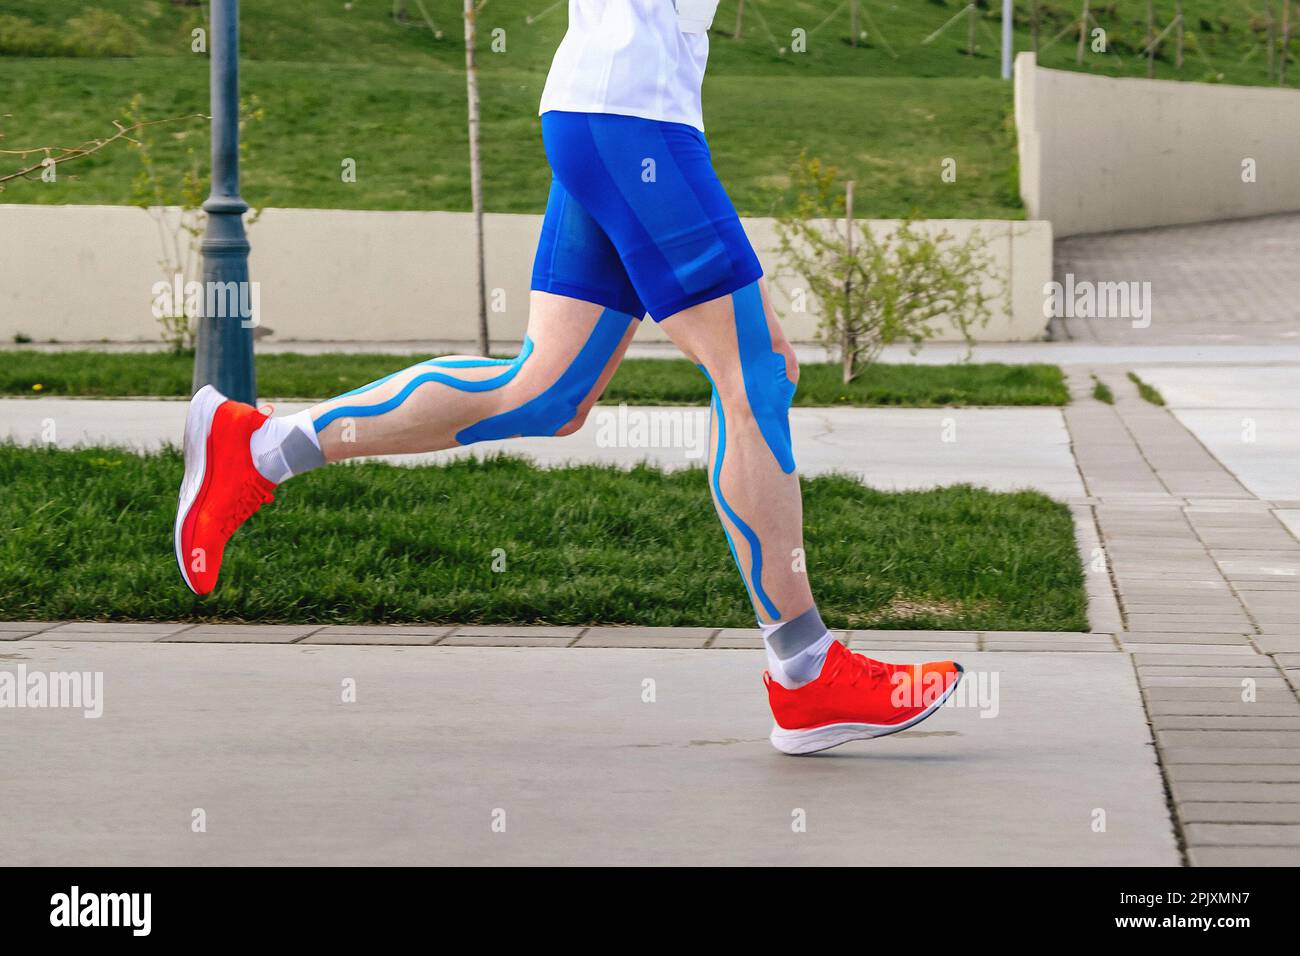 gambe atleta runner in cinesiotaping blu su coscia, muscoli del polpaccio e ginocchia, gara sportiva maratona resistenza corsa Foto Stock